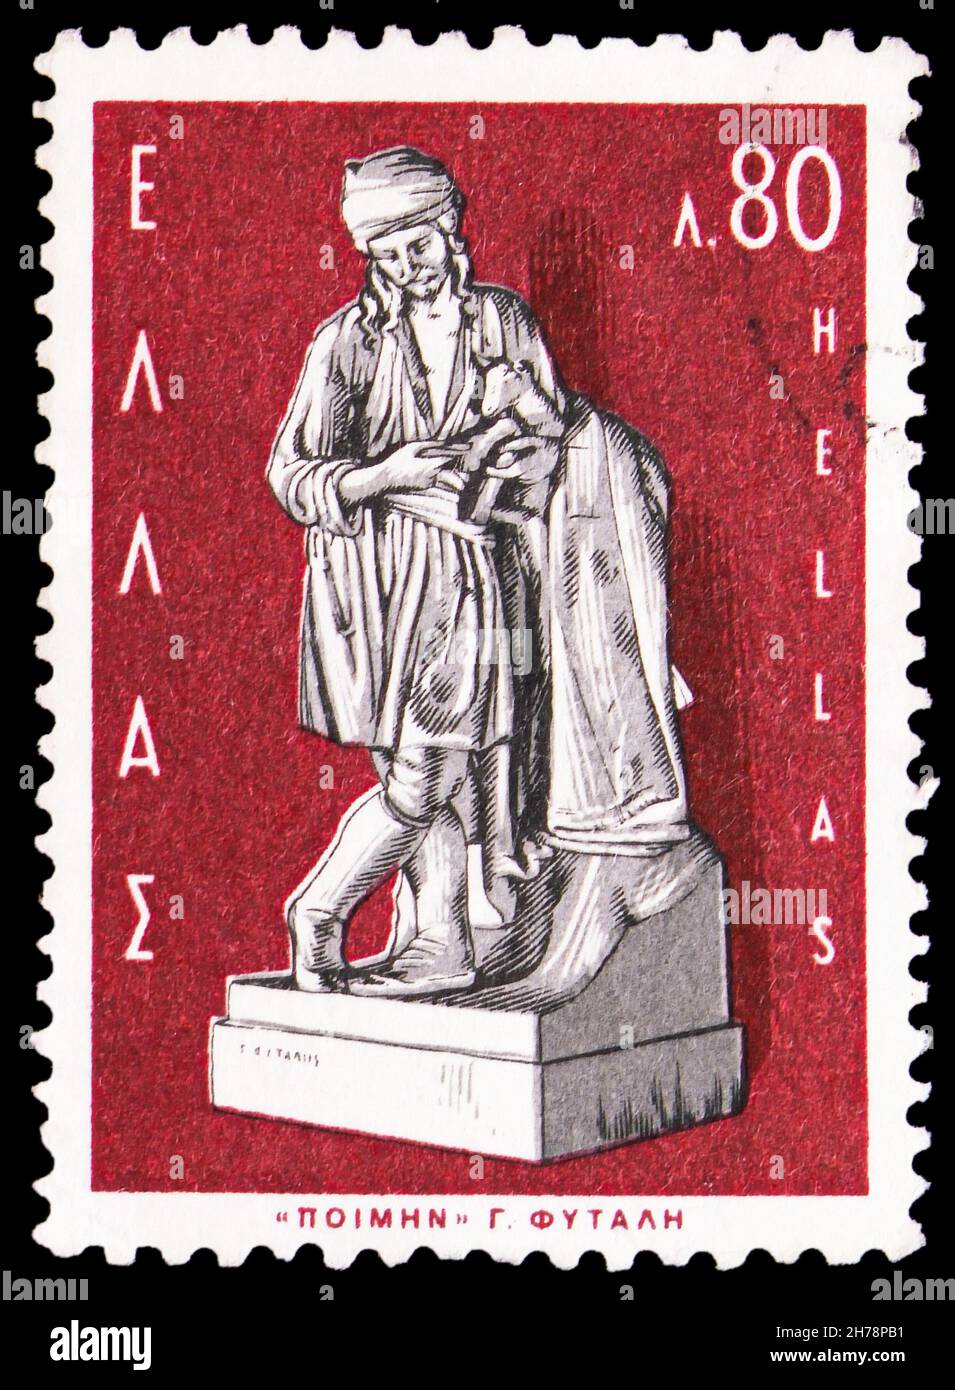 MOSCOU, RUSSIE - 25 OCTOBRE 2021: Timbre-poste imprimé en Grèce montre "Shepherd" de George Fytalis (1830-1880), série de sculptures grecques, vers 1967 Banque D'Images